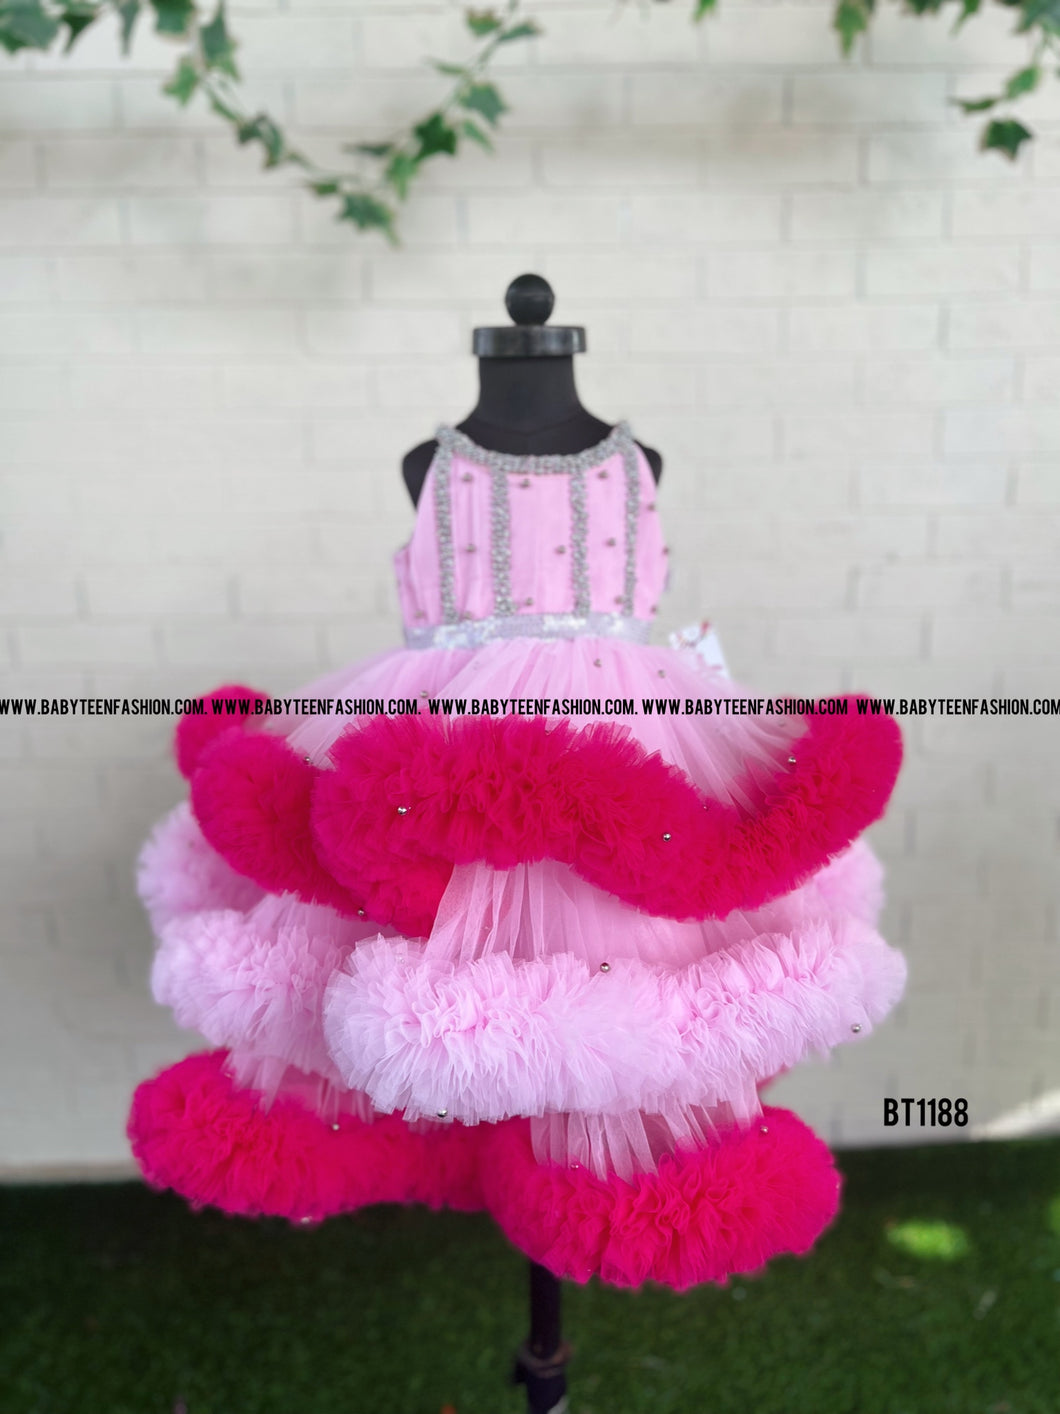 BT1188 Candy Floss Dream Dress – Sweeten Every Soirée